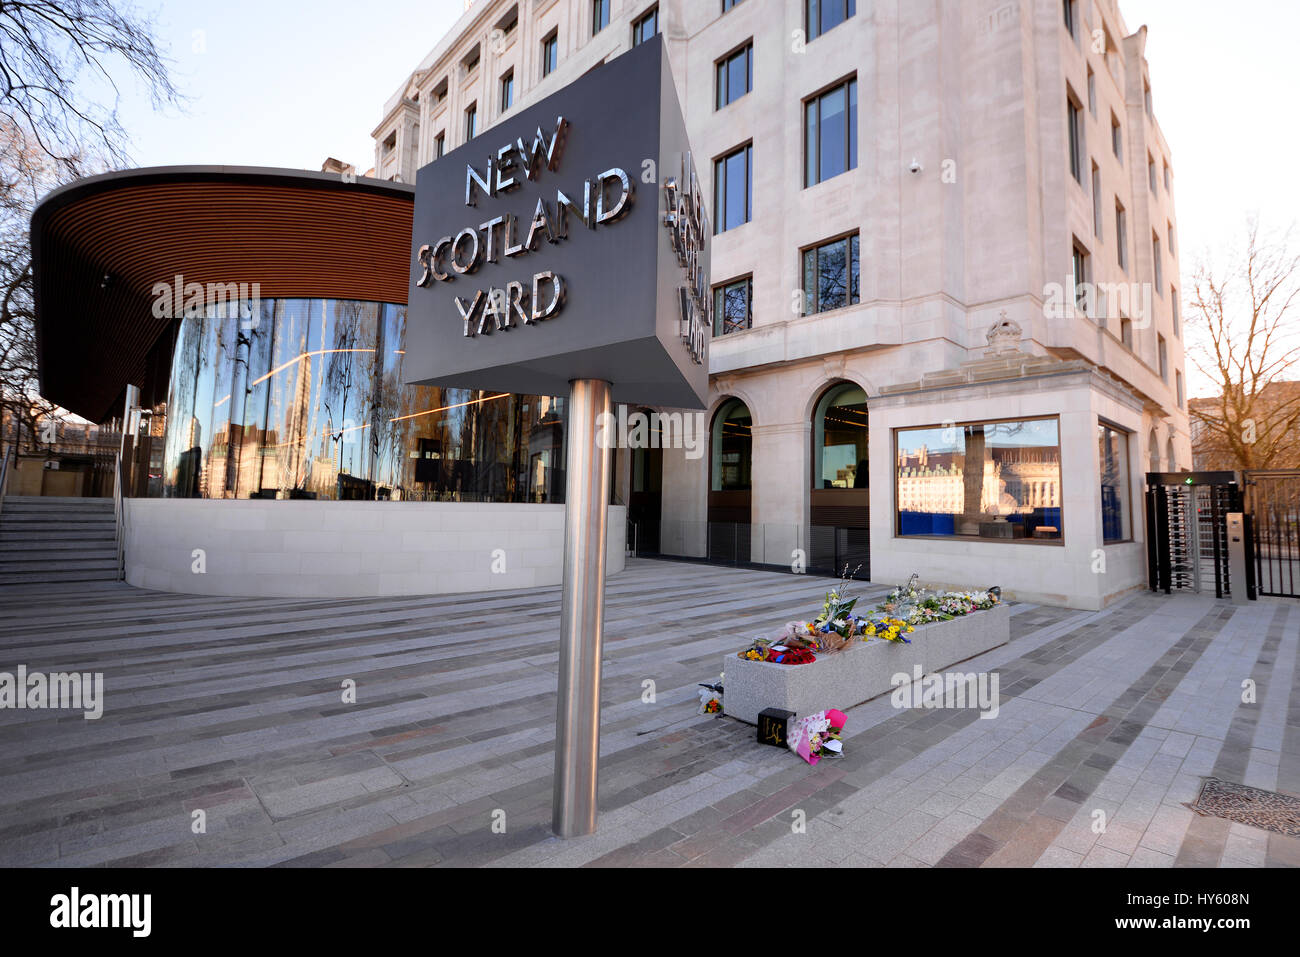 Hommages floraux devant New Scotland Yard, Londres, suite à l'action terroriste et à la mort du PC Keith Palmer Banque D'Images